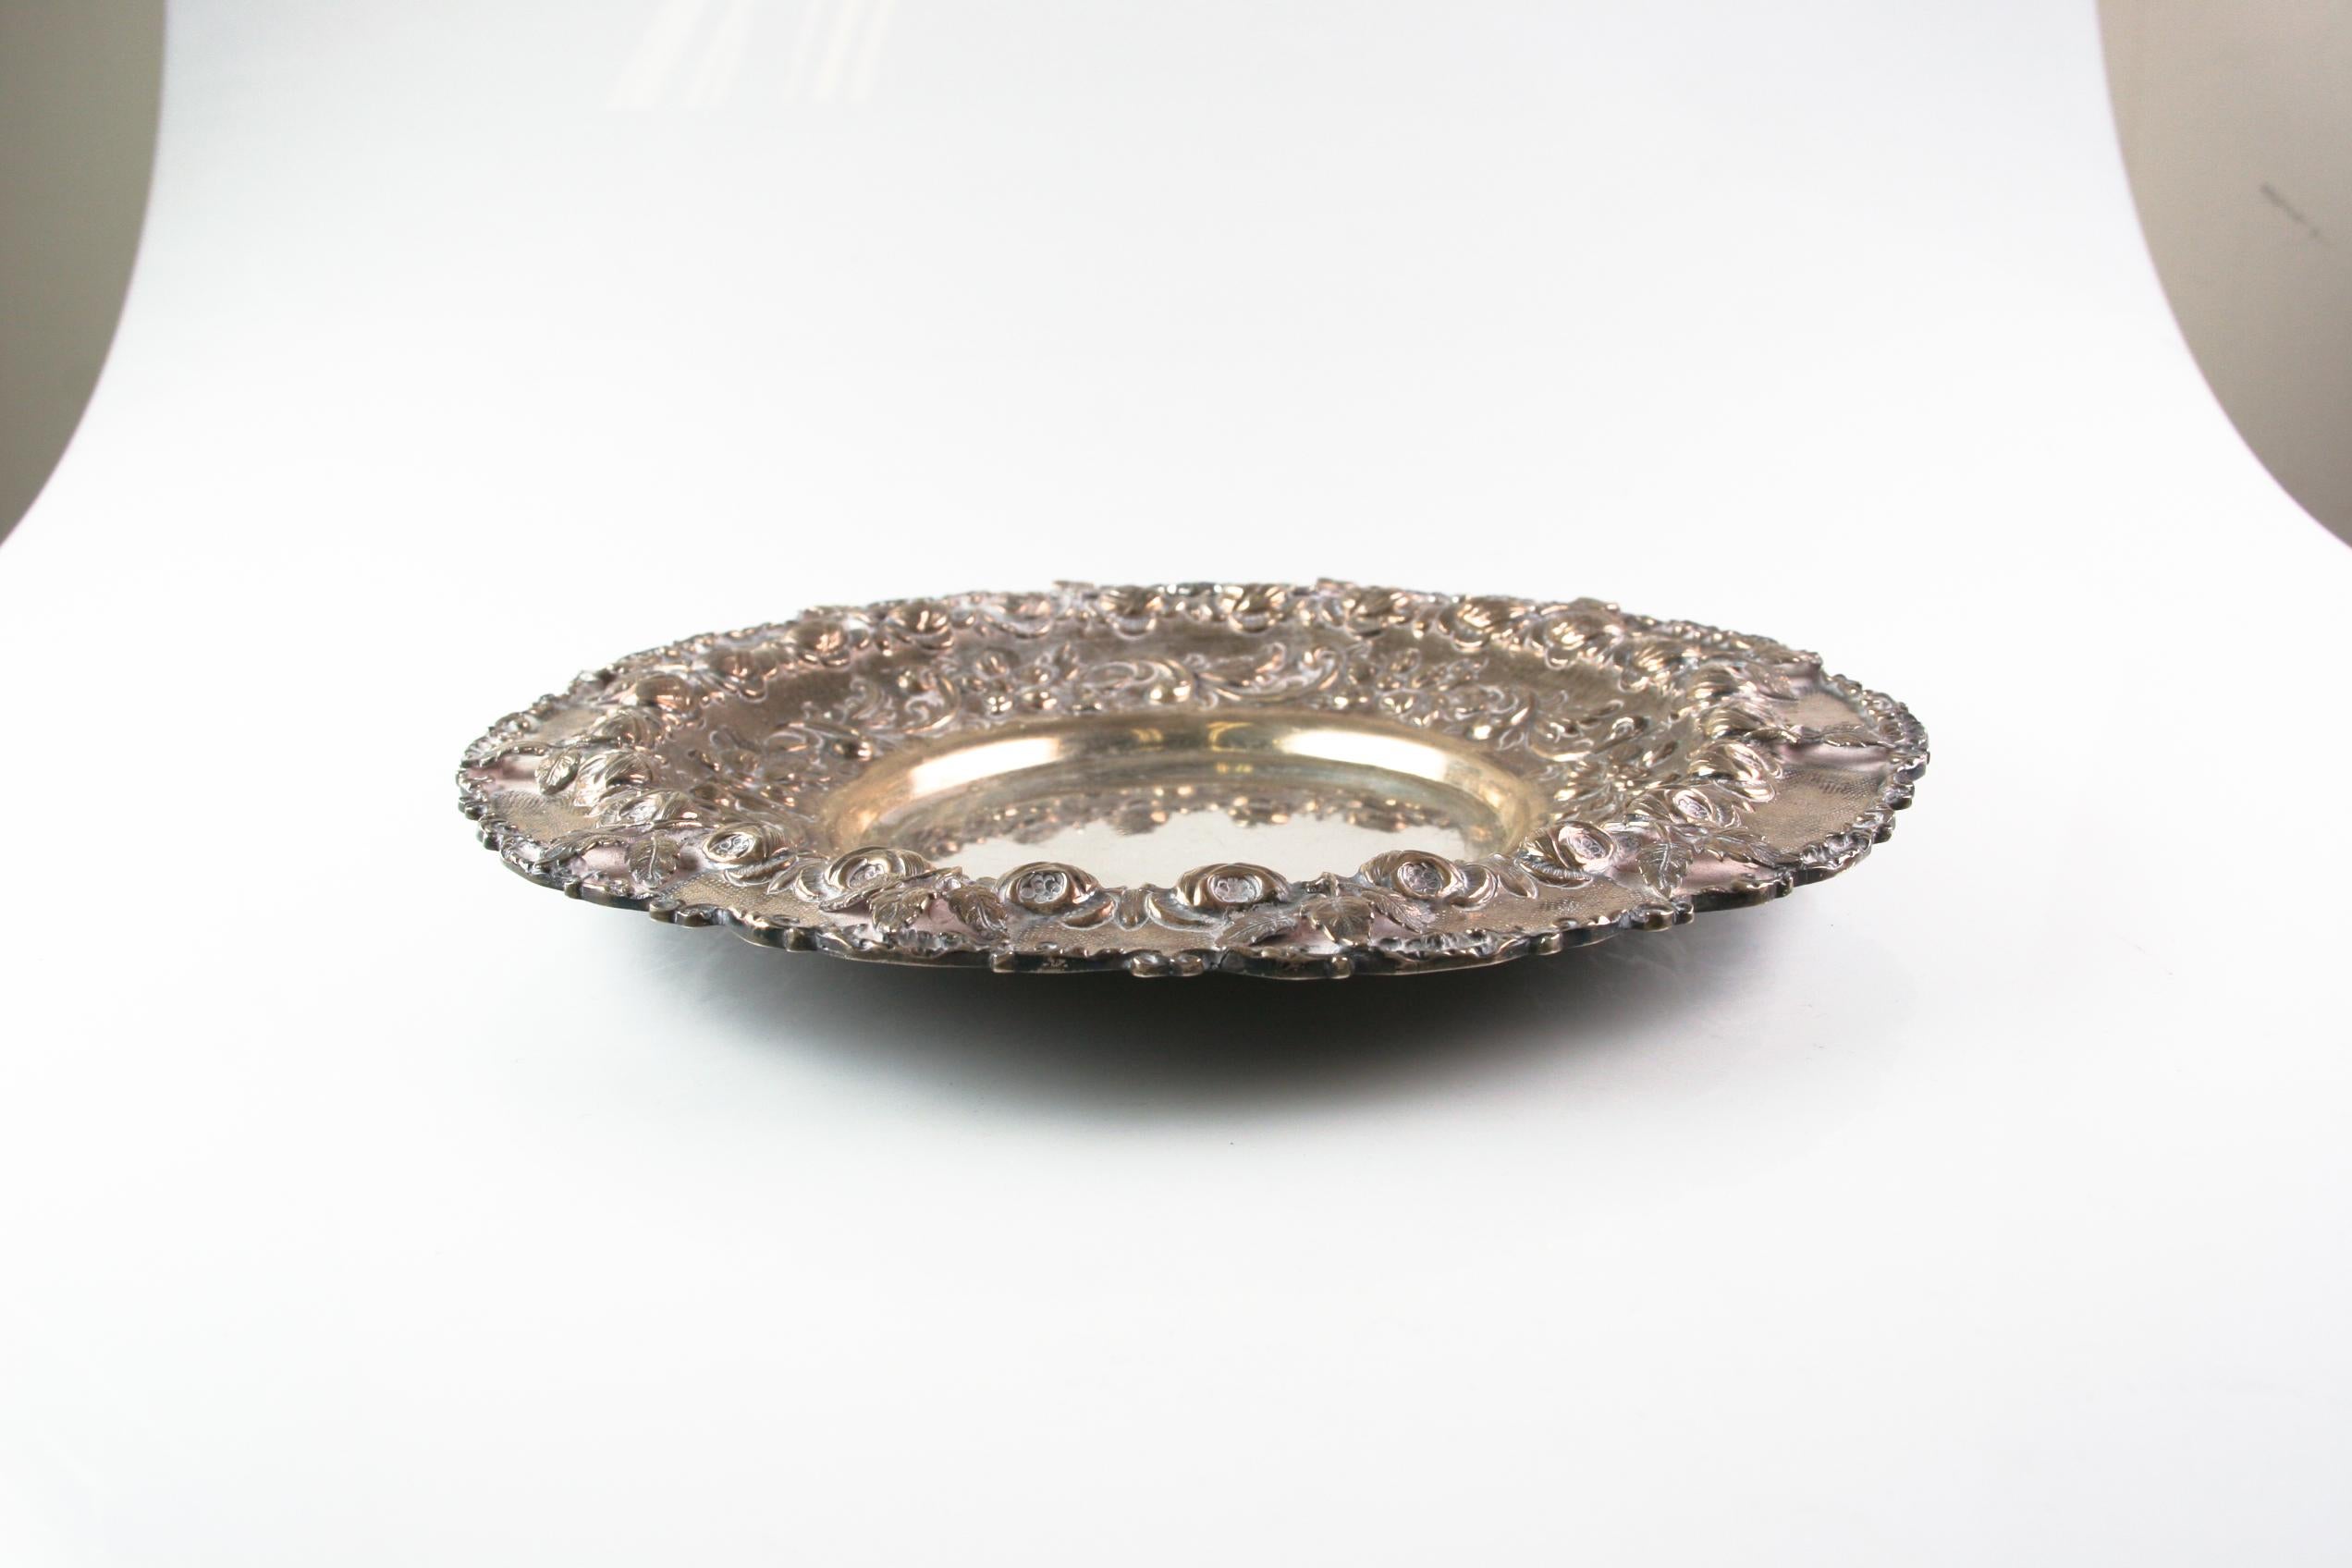 Antique Art Nouveau Cherub Repousse Silver Water Pitcher and Platter For Sale 2